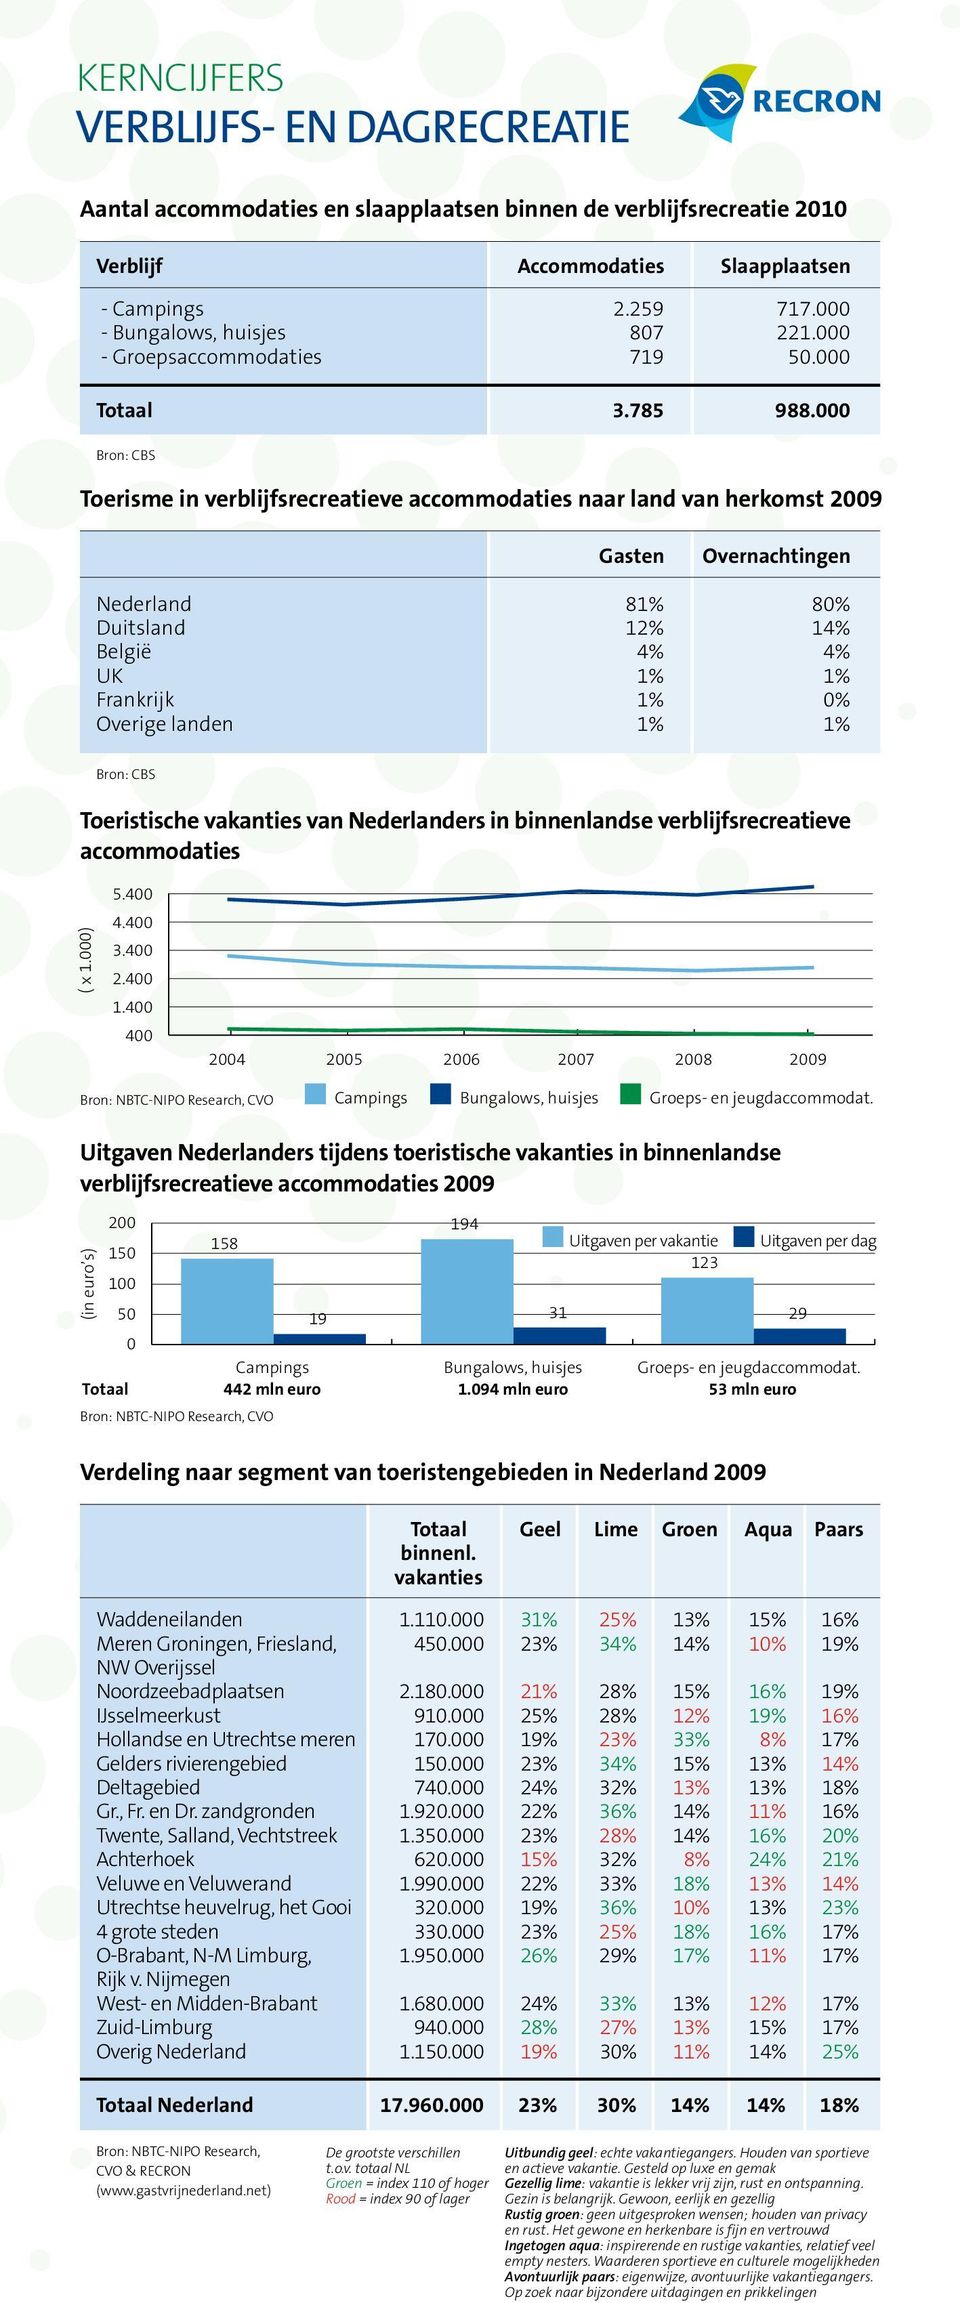 000 Bron: CBS Toerisme in verblijfsrecreatieve accommodaties naar land van herkomst 2009 Gasten Overnachtingen Nederland 81% 80% Duitsland 12% 14% België 4% 4% UK 1% 1% Frankrijk 1% 0% Overige landen